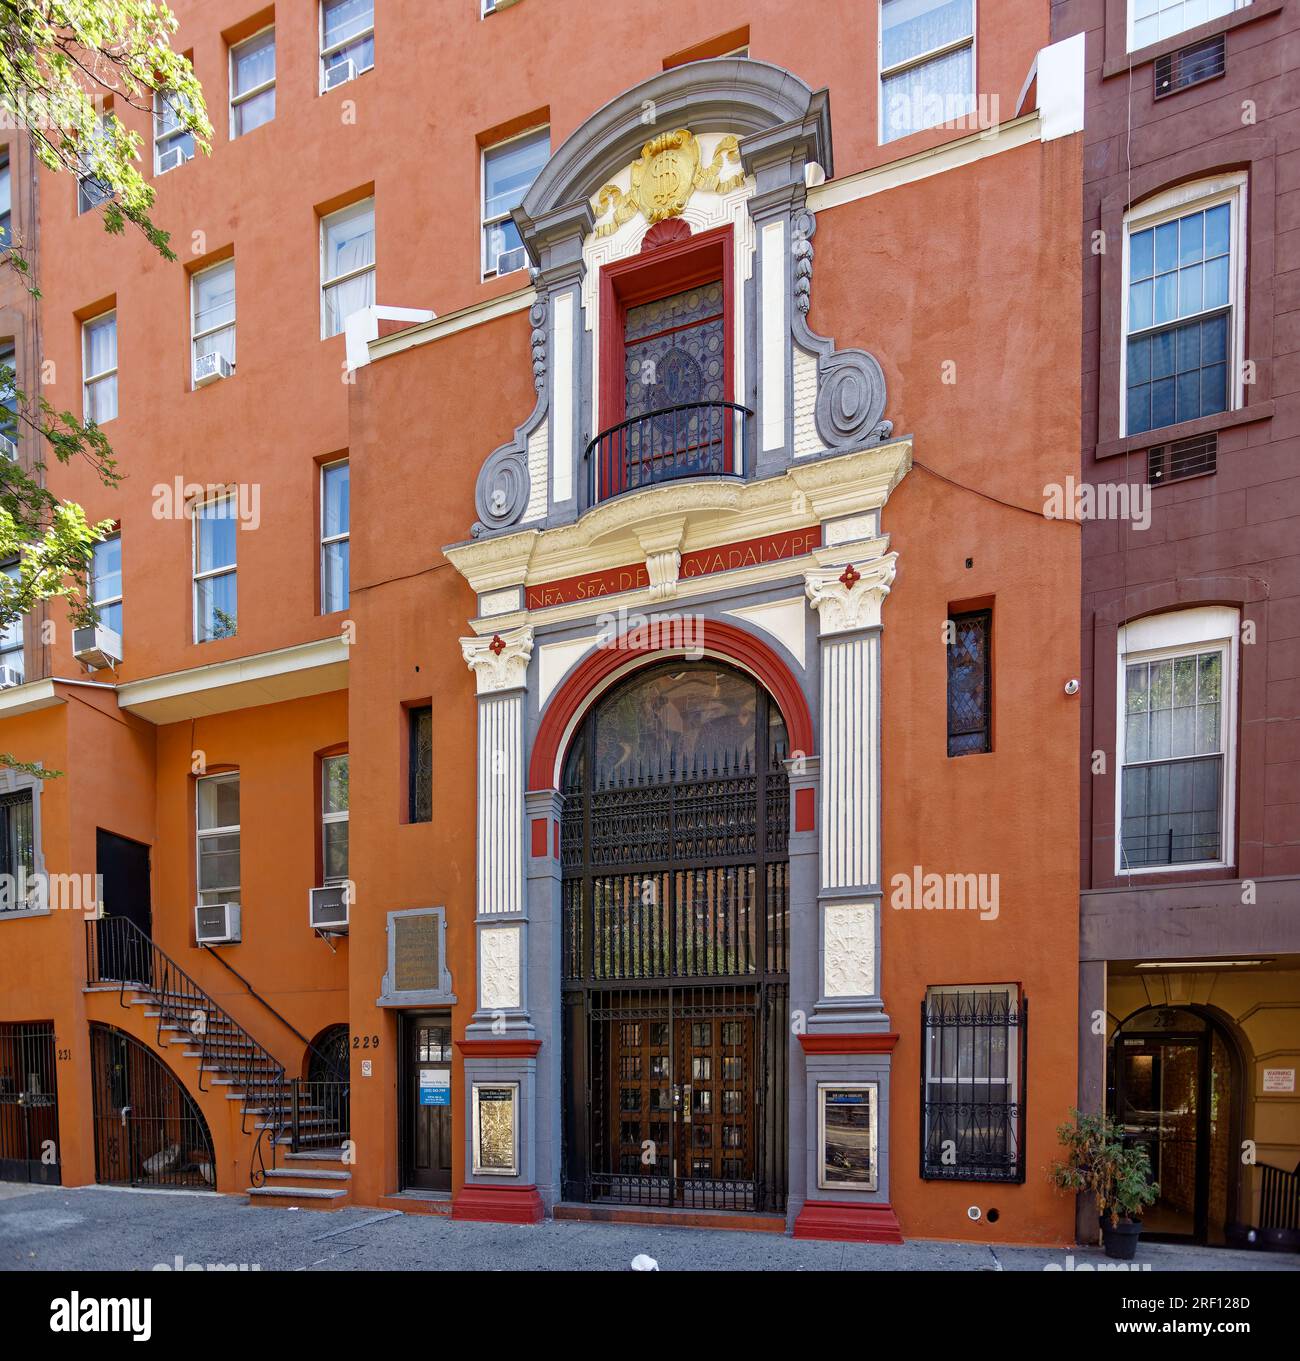 Chelsea : l'église notre-Dame de Guadalupe, maintenant fermée, est deux brownstones reconverties avec une façade baroque espagnole ajoutée au 229 West 14th Street. Banque D'Images